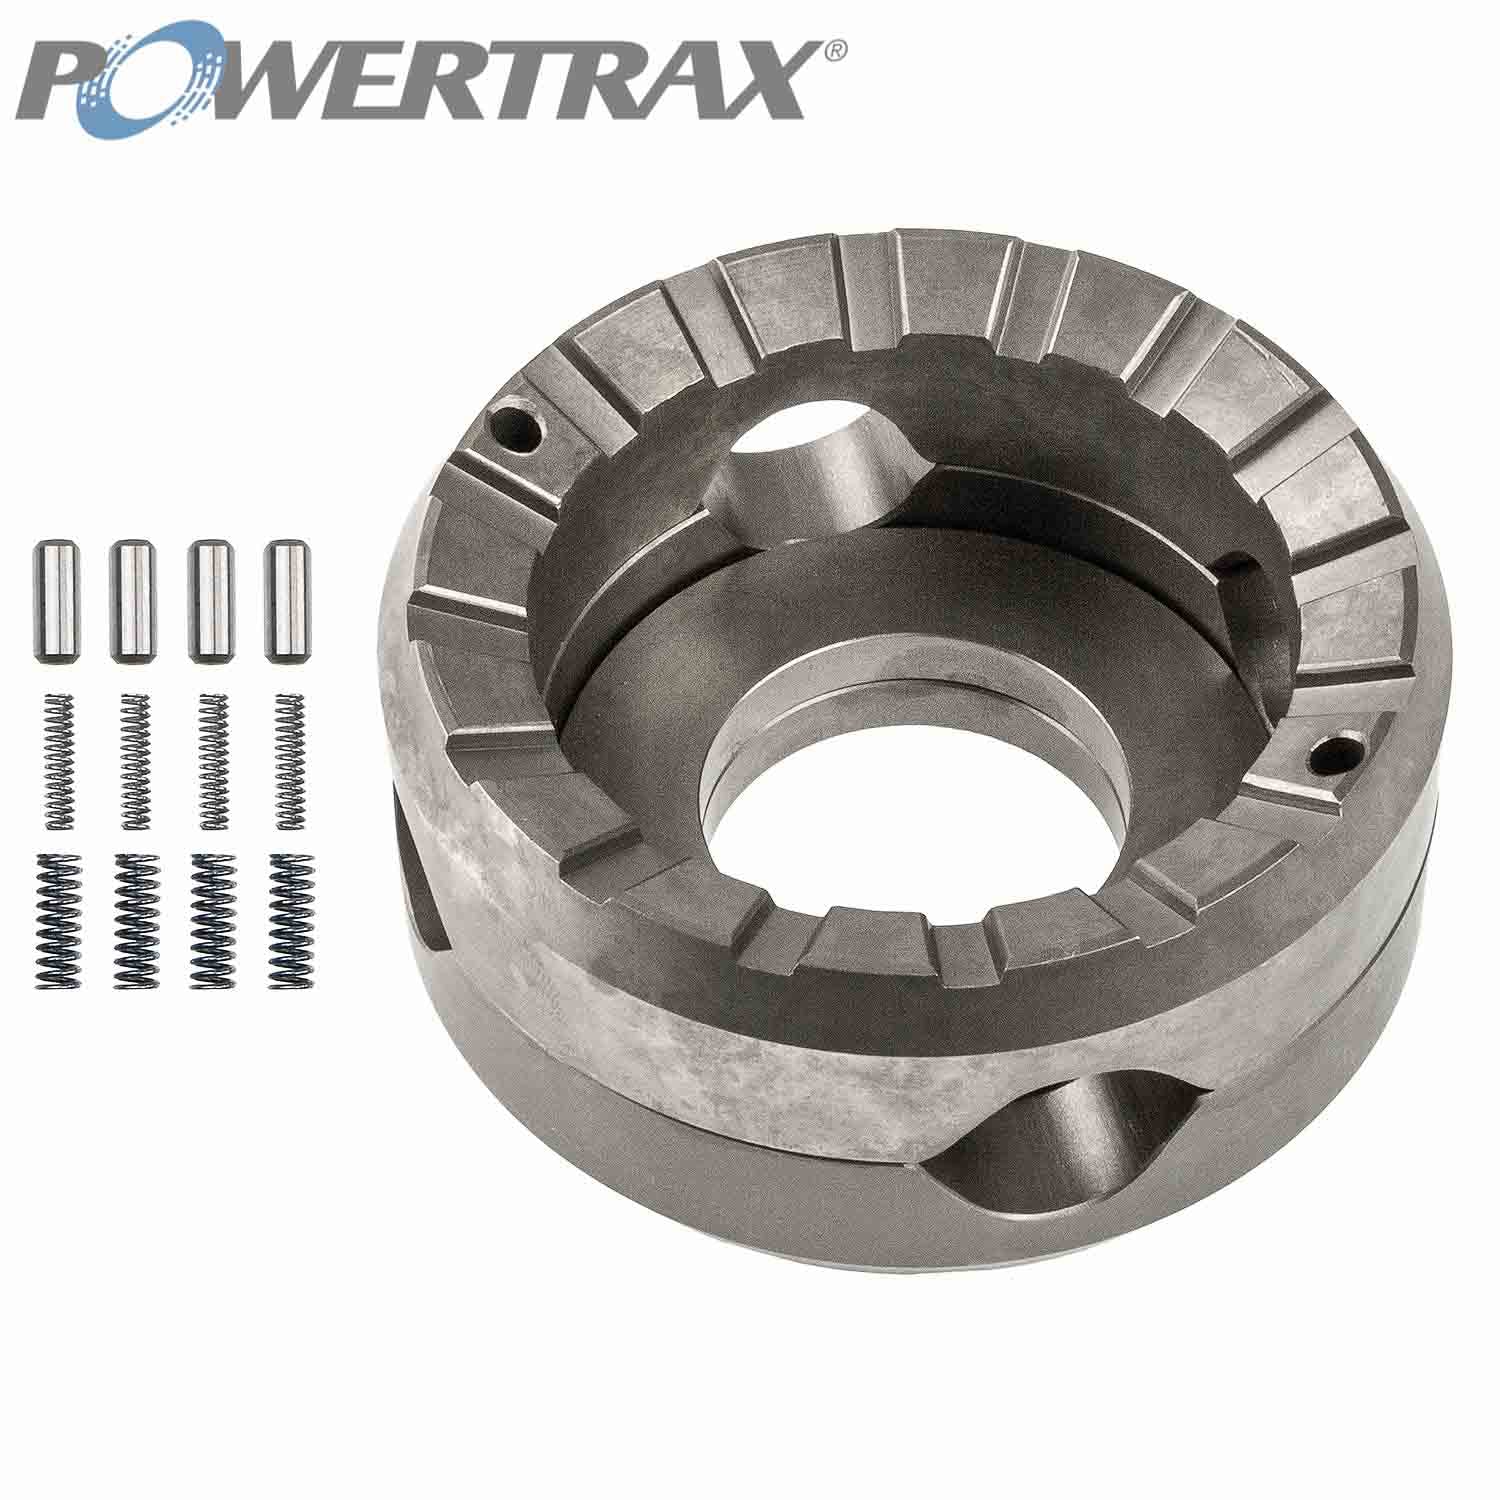 PowerTrax 3220-LR Lock Right Locker